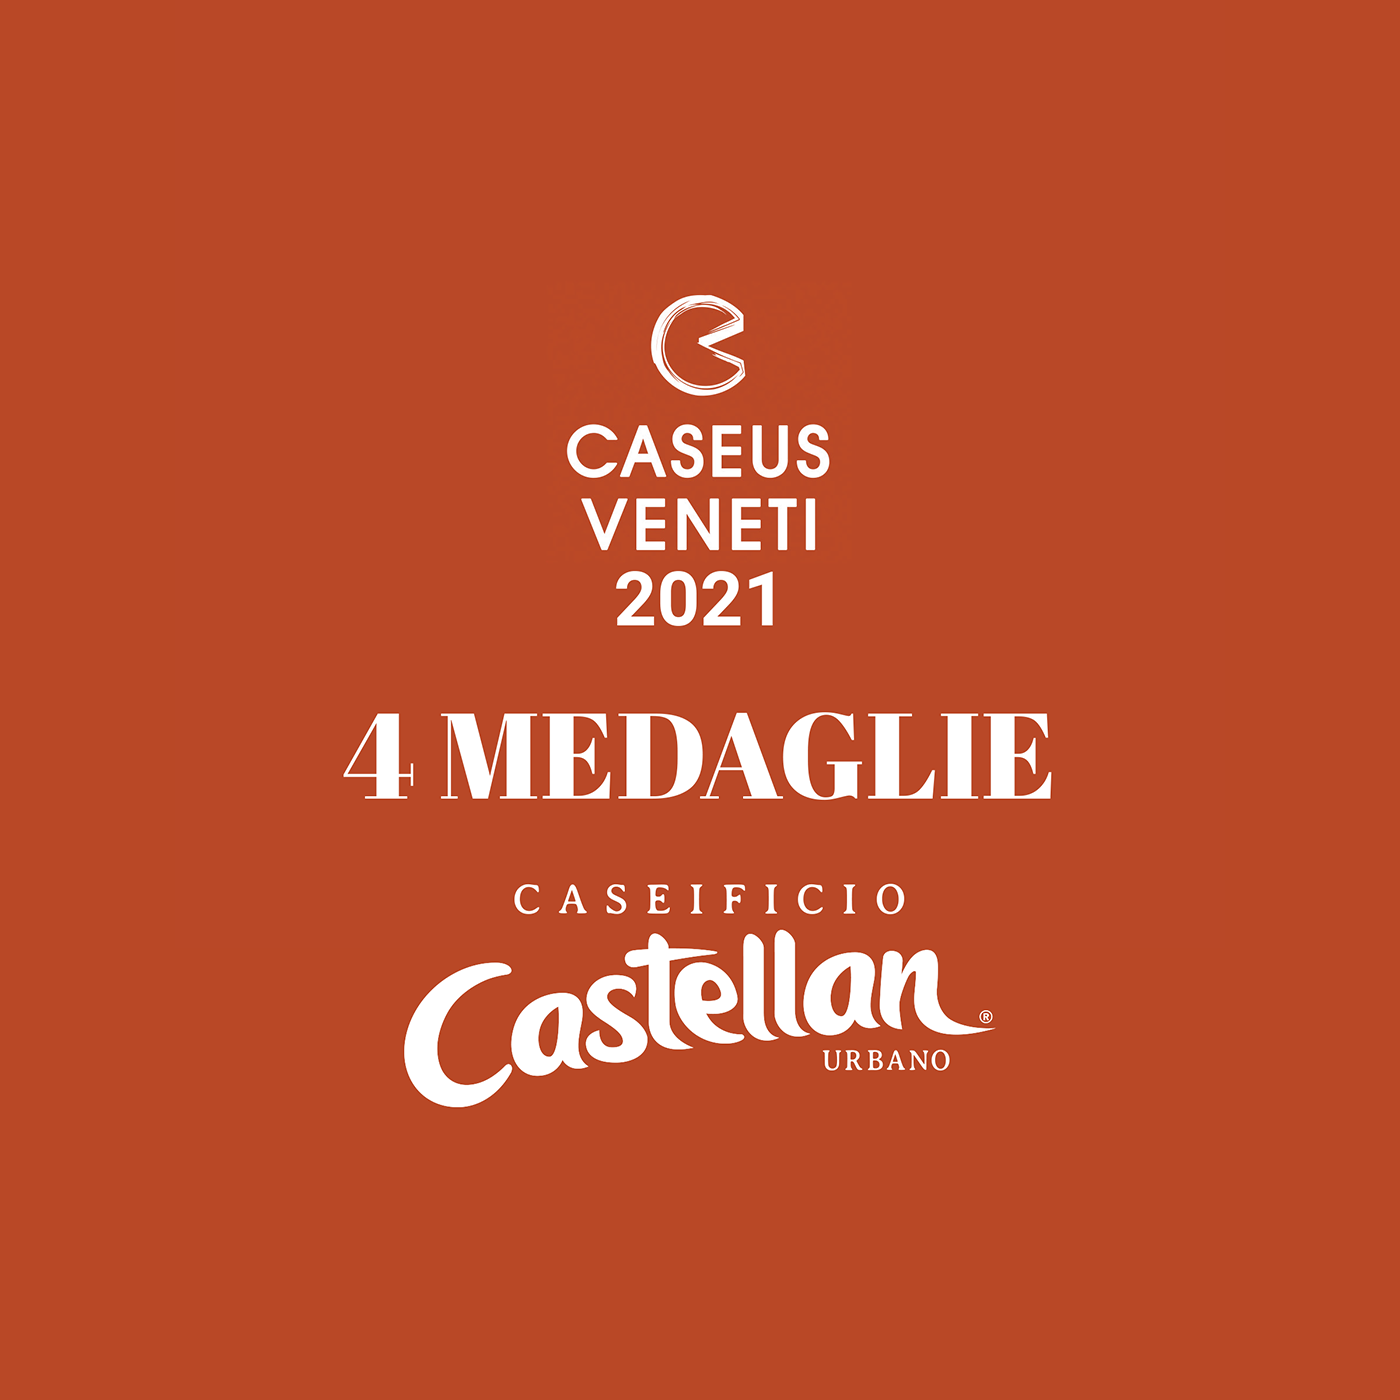 Caseificio Castellan 4 medaglie Caseus Veenti 2021